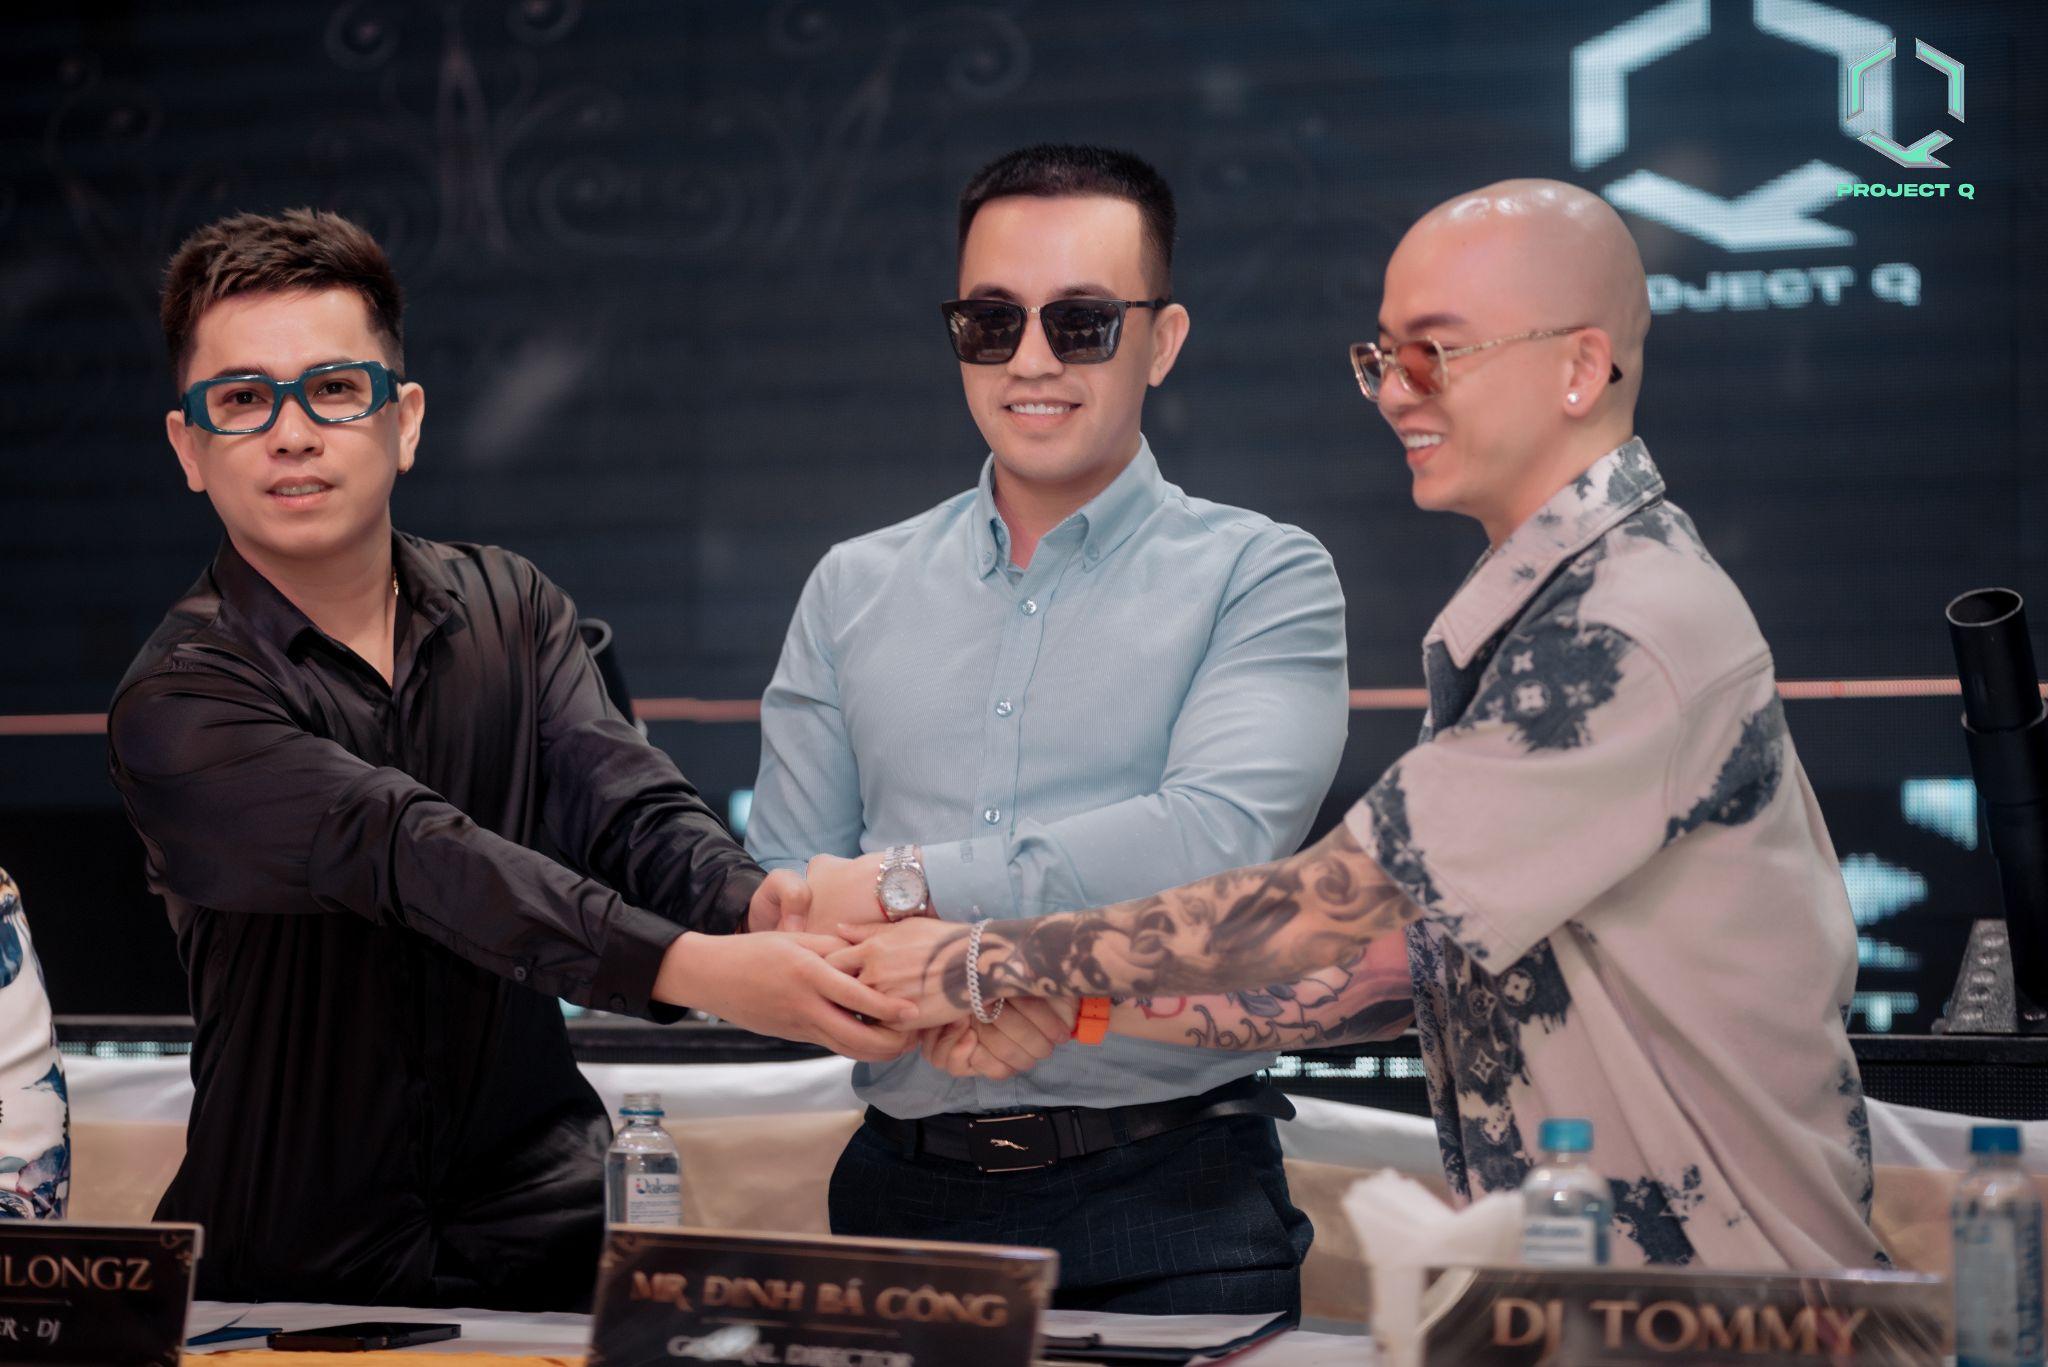 Project Q chính thức bổ nhiệm DJ Tommy và Producer Shenlongz trở thành Cố vấn cấp cao và Giám đốc âm nhạc toàn hệ thống - 1